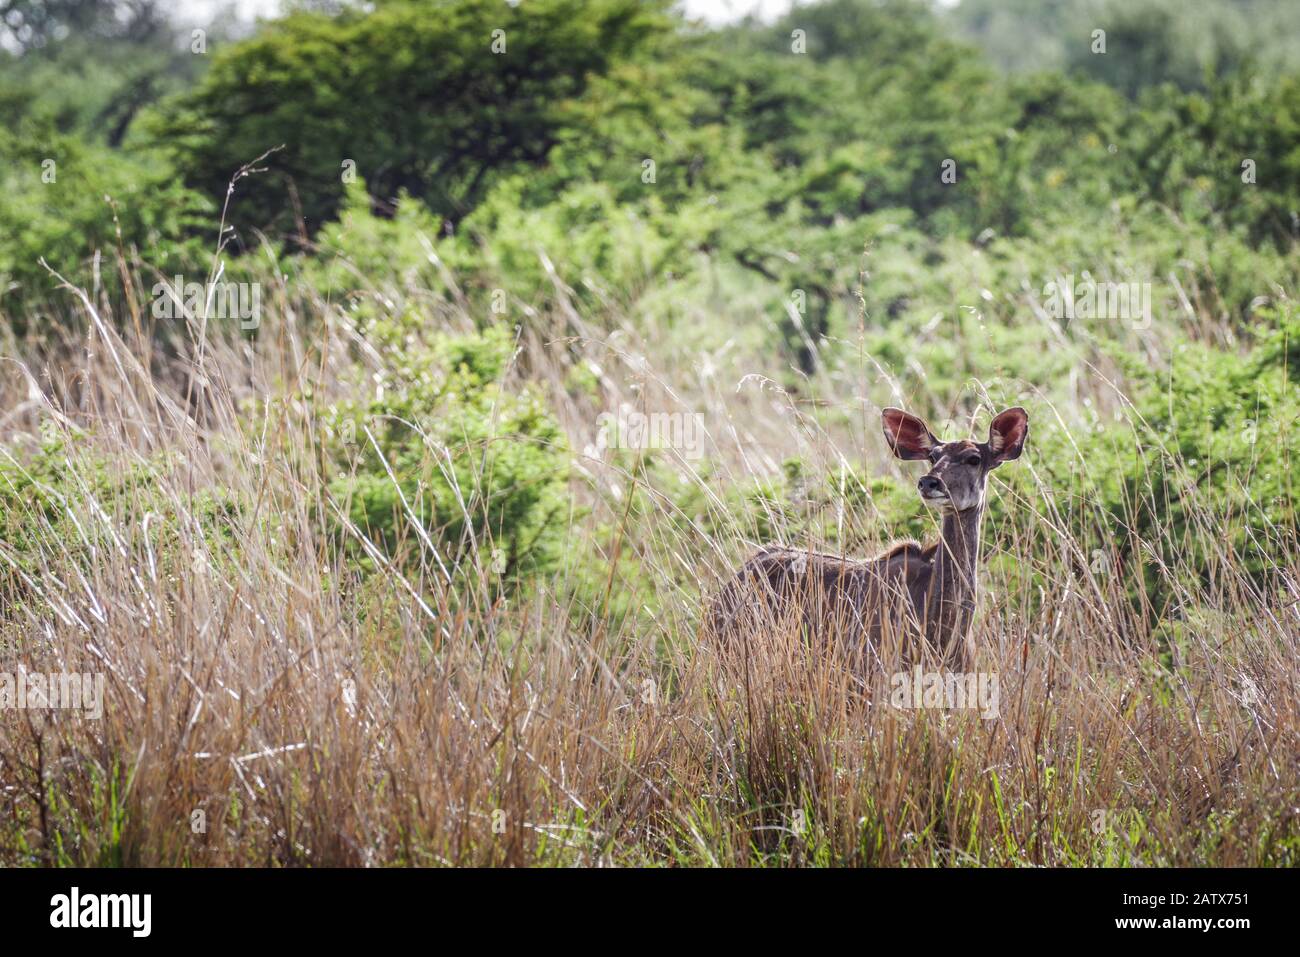 Weibliche Kudu, die sich im privaten Game-Reservat von Nambiti im hohen Gras versteckt - Kwazulu Natal, Südafrika Stockfoto